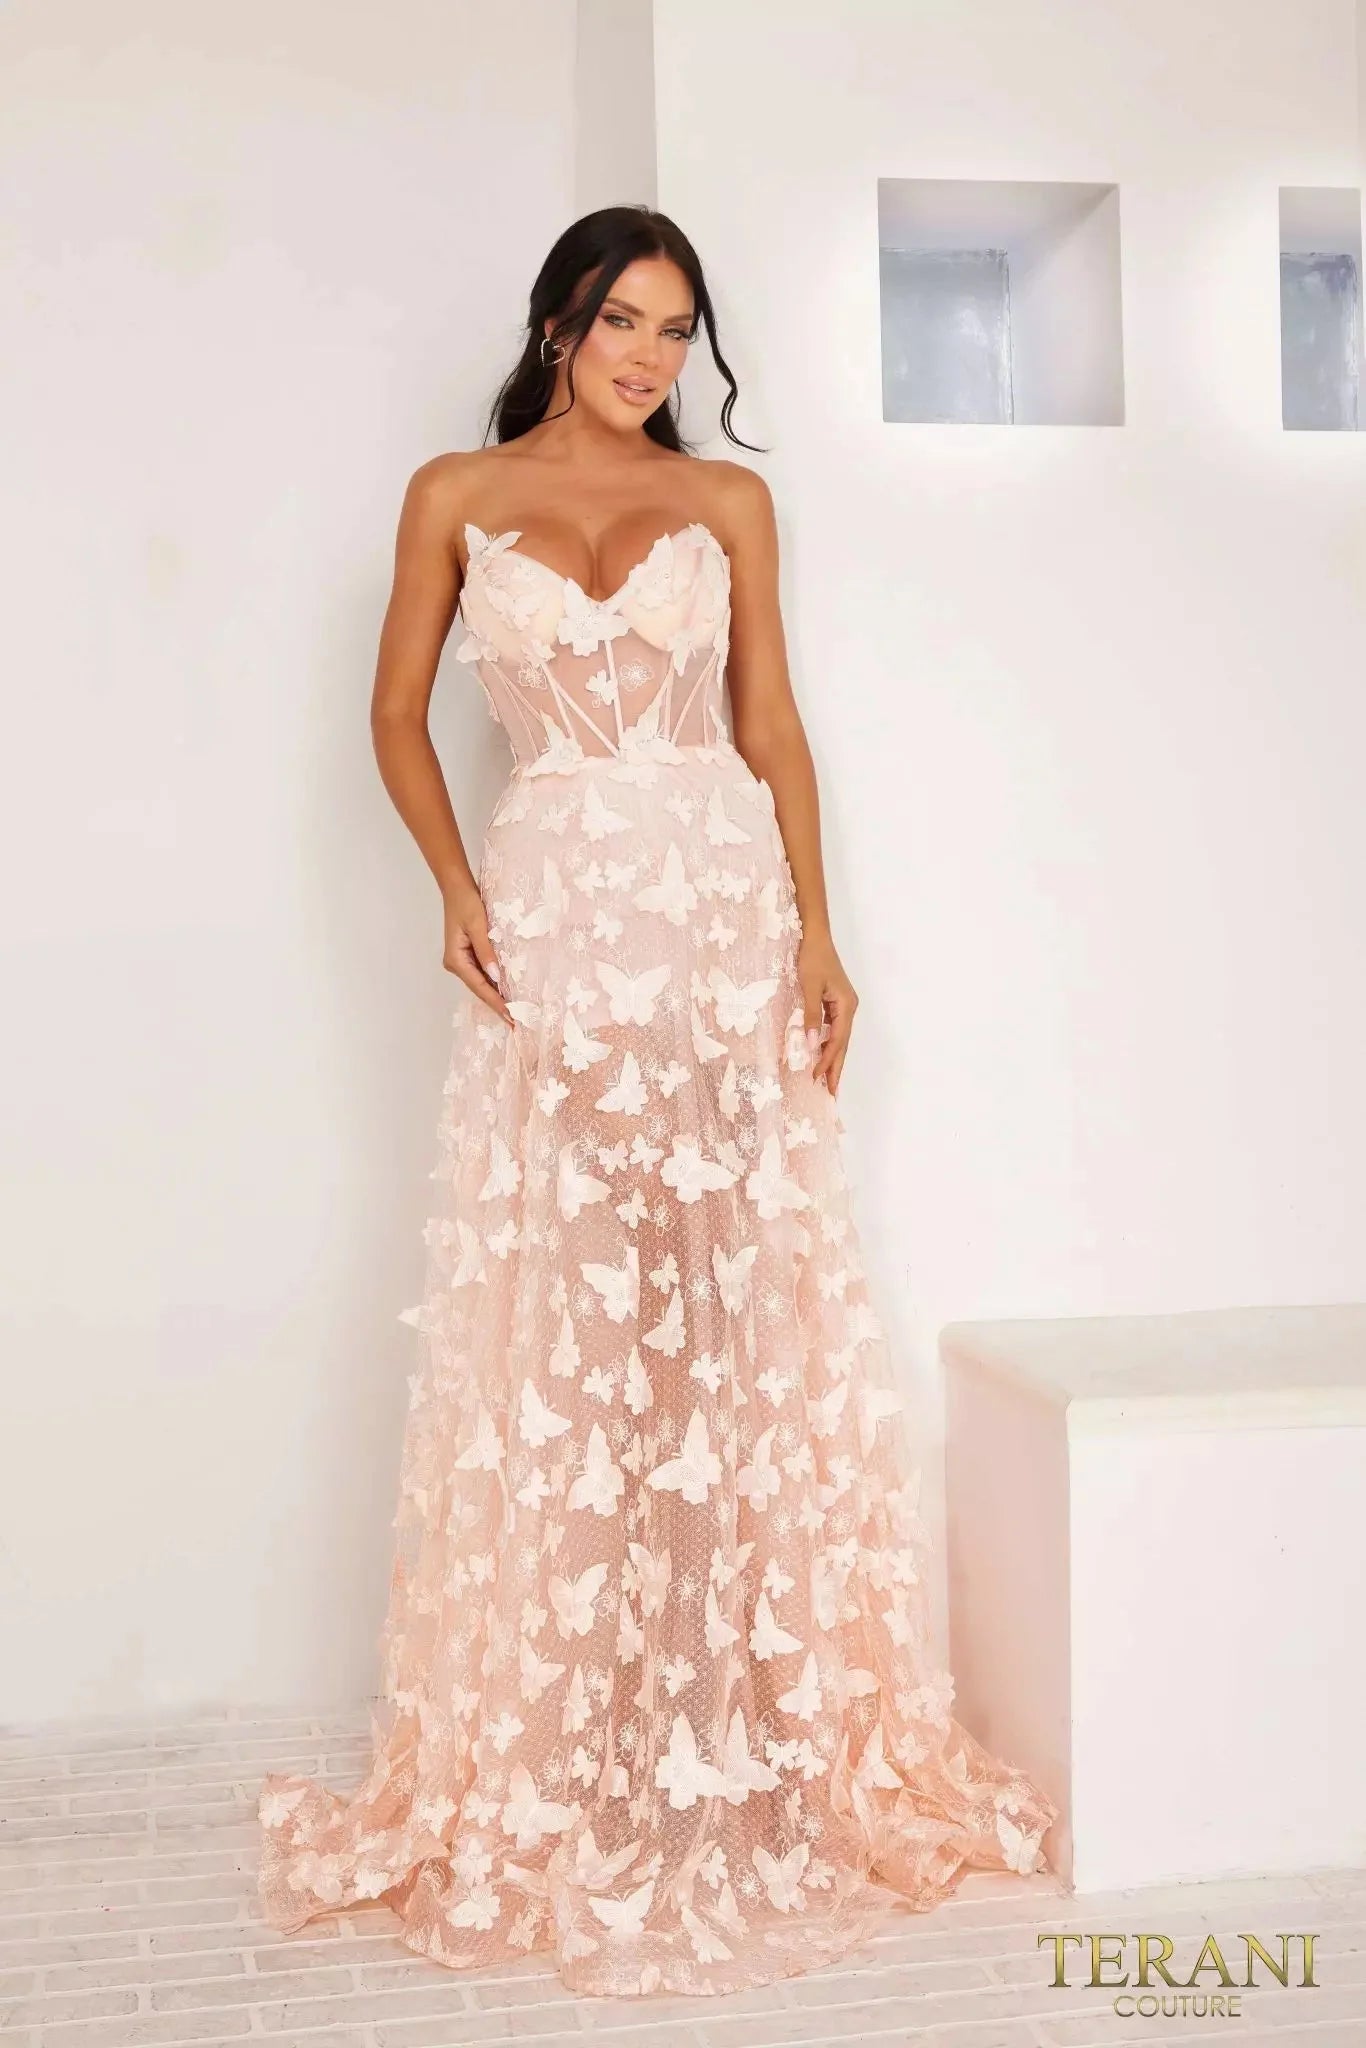 Terani Couture 241P2086 - V-Neck A-Line Dress Special Occasion Dress